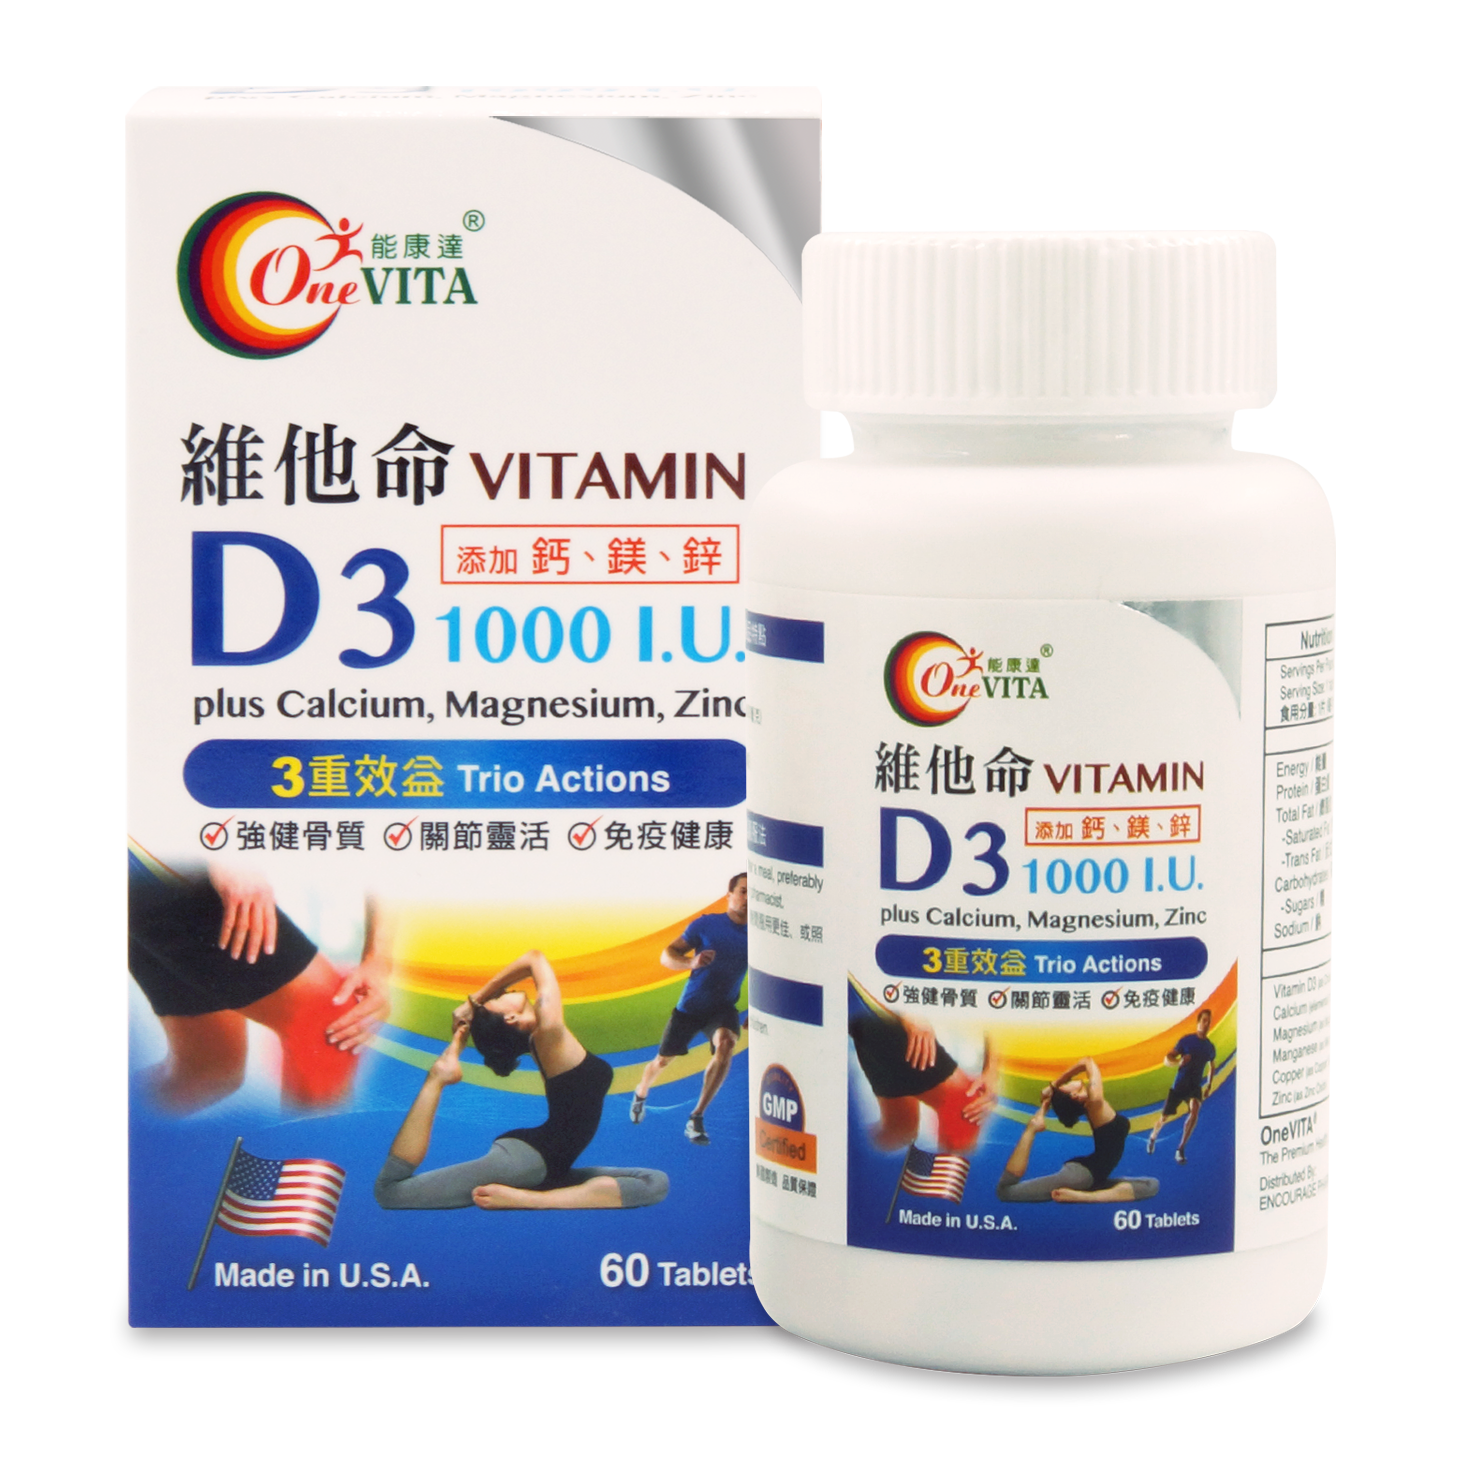 能康達維他命D3 1000I.U. 添加鈣、鎂、鋅 60's OneVITA Vitamin D3 1000I.U. plus Calcium, Magnesim, Zinc 60 tablets